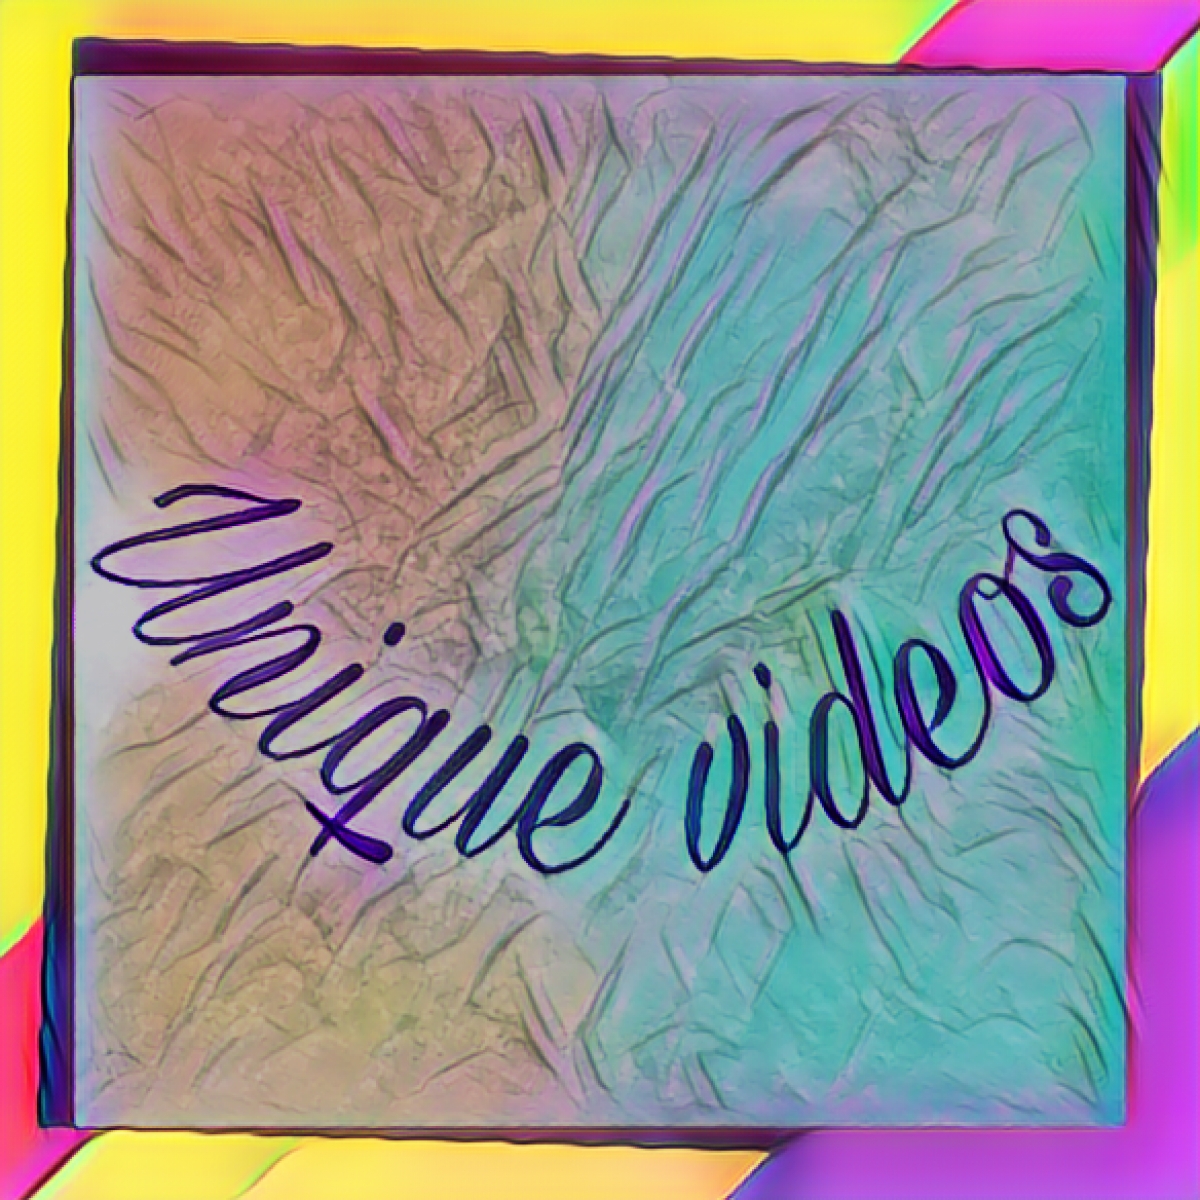 Unique Videos #uniquevideos